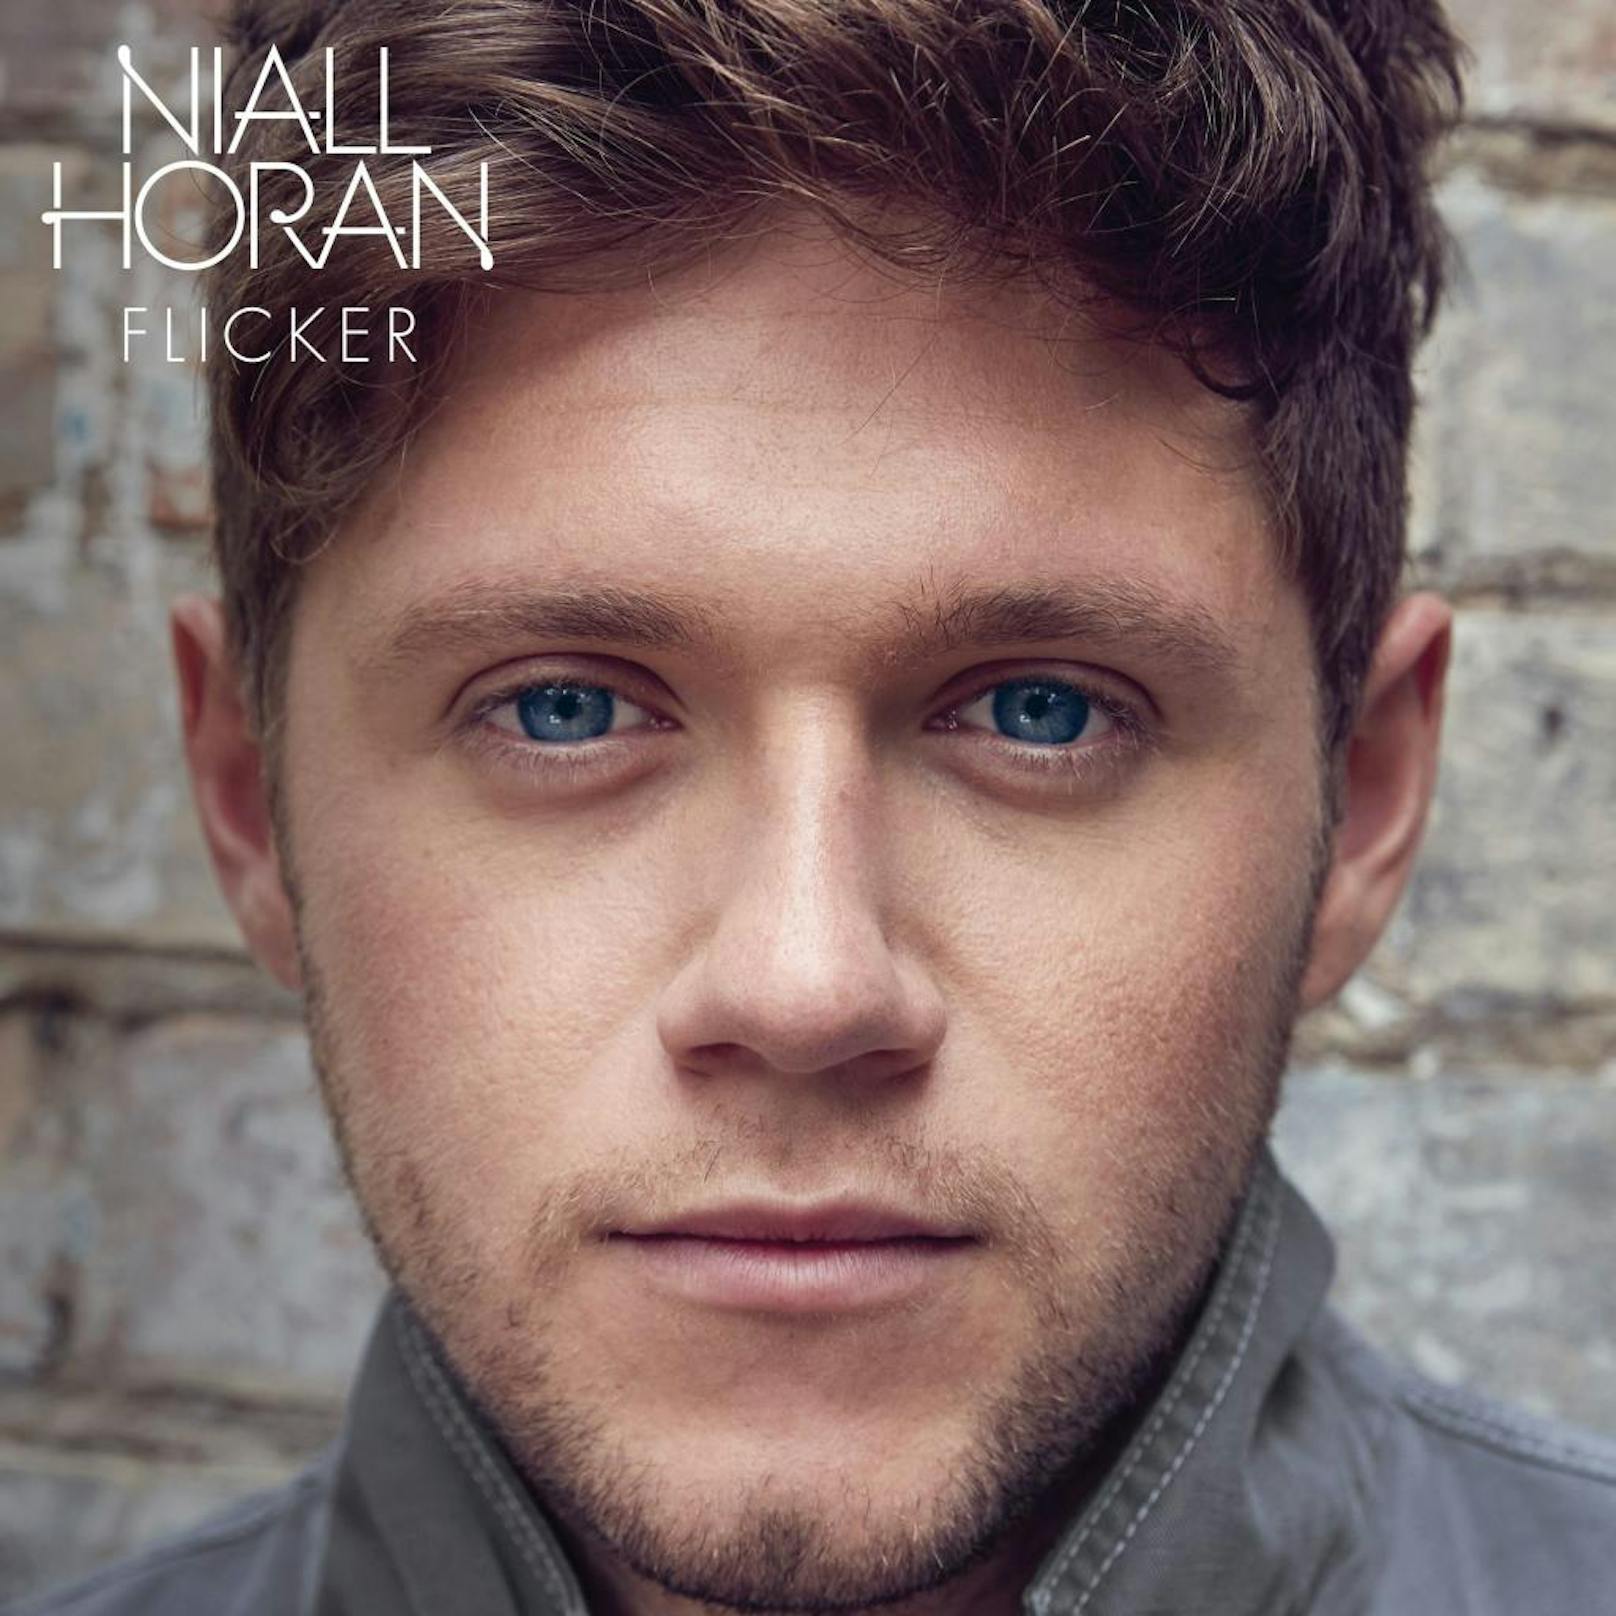 Niall Horan "Flicker"